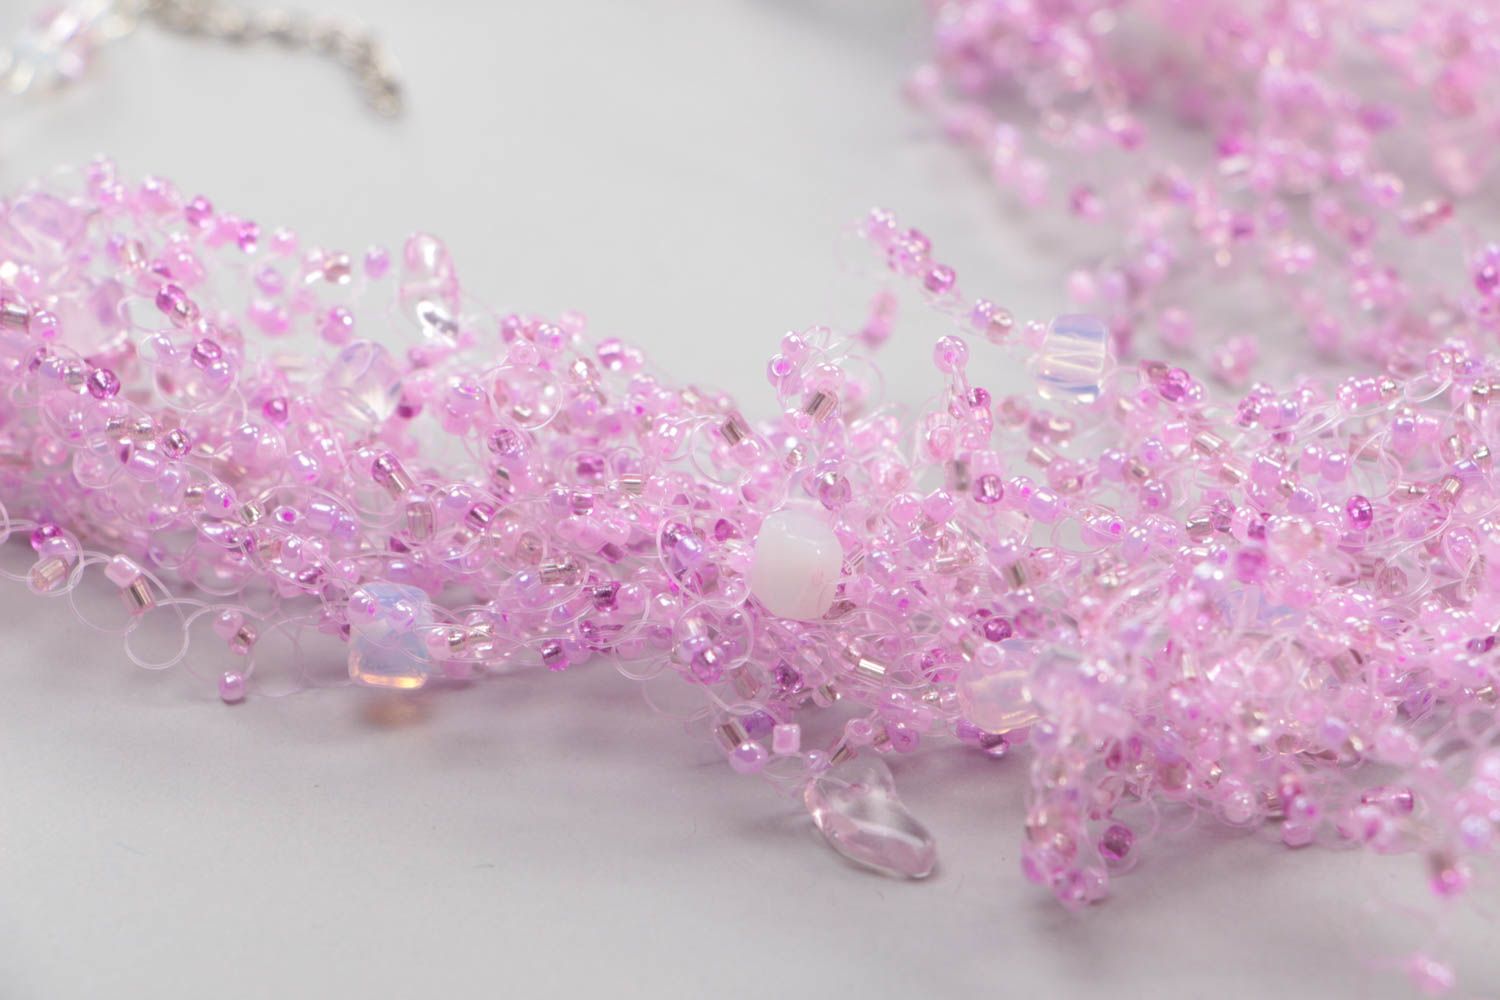 Ожерелье из бисера воздушное колье авторское многорядное розовое хэнд мэйд фото 3